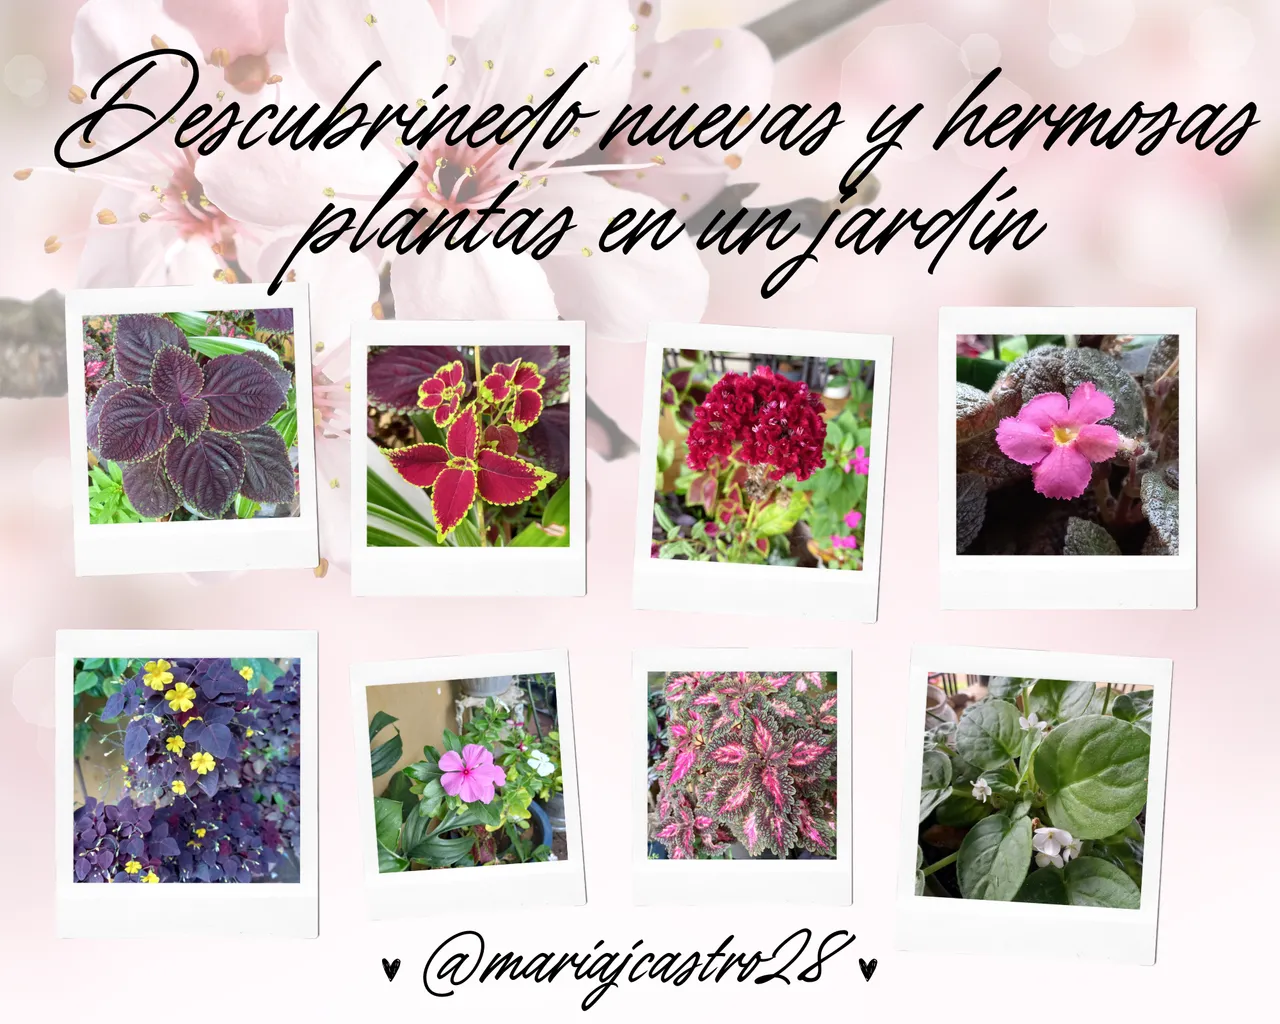 Descubrinedo nuevas y hermosas plantas en un jardín.png